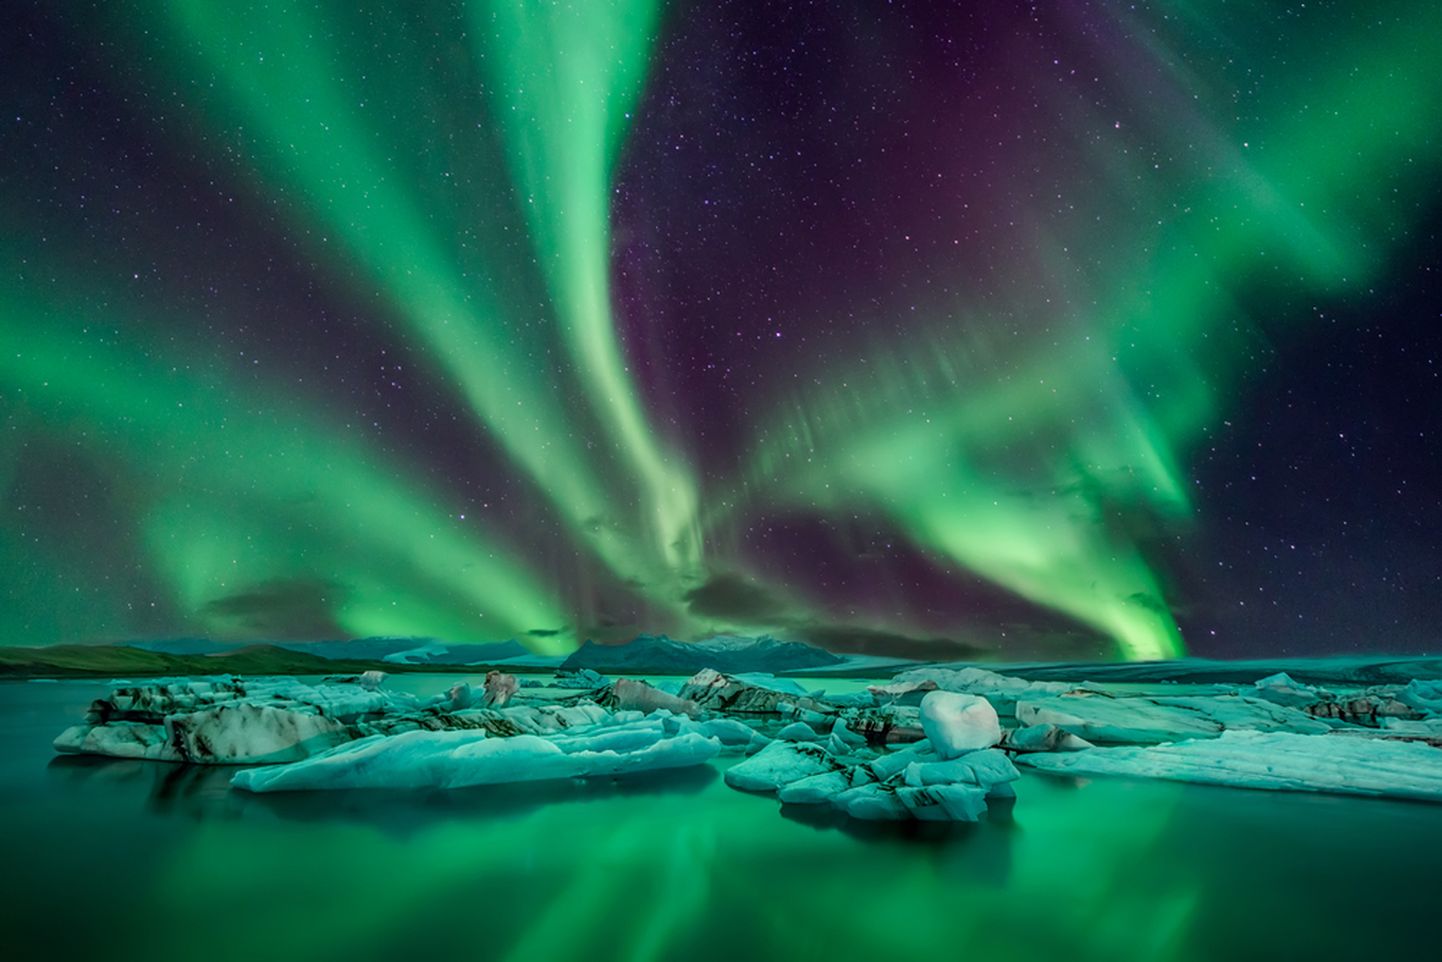 Island on üks parimaid paiku maailmas, kus virmalisi näha võib.